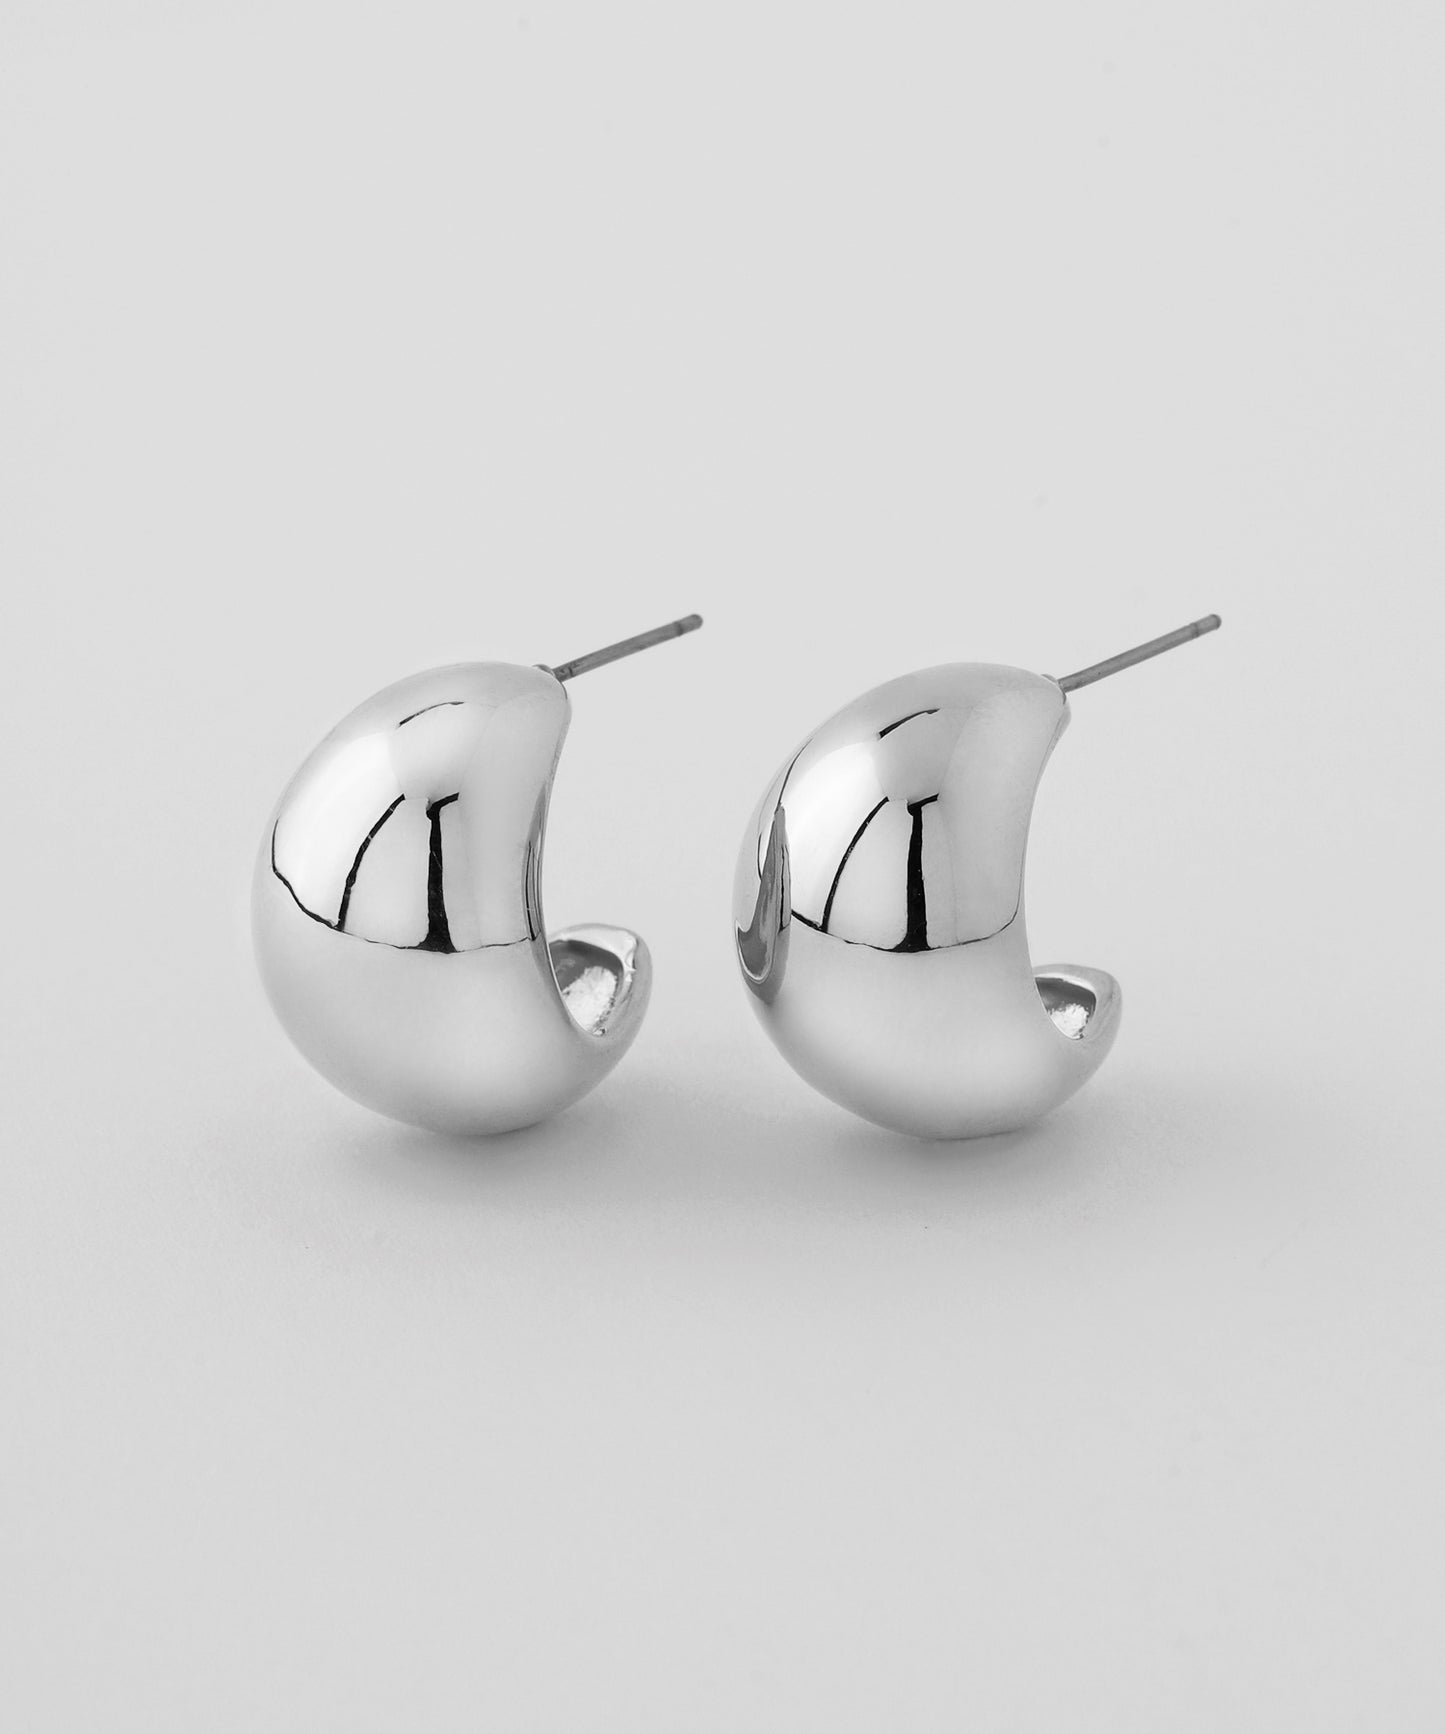 Volume Metal Earrings [Ownideal]